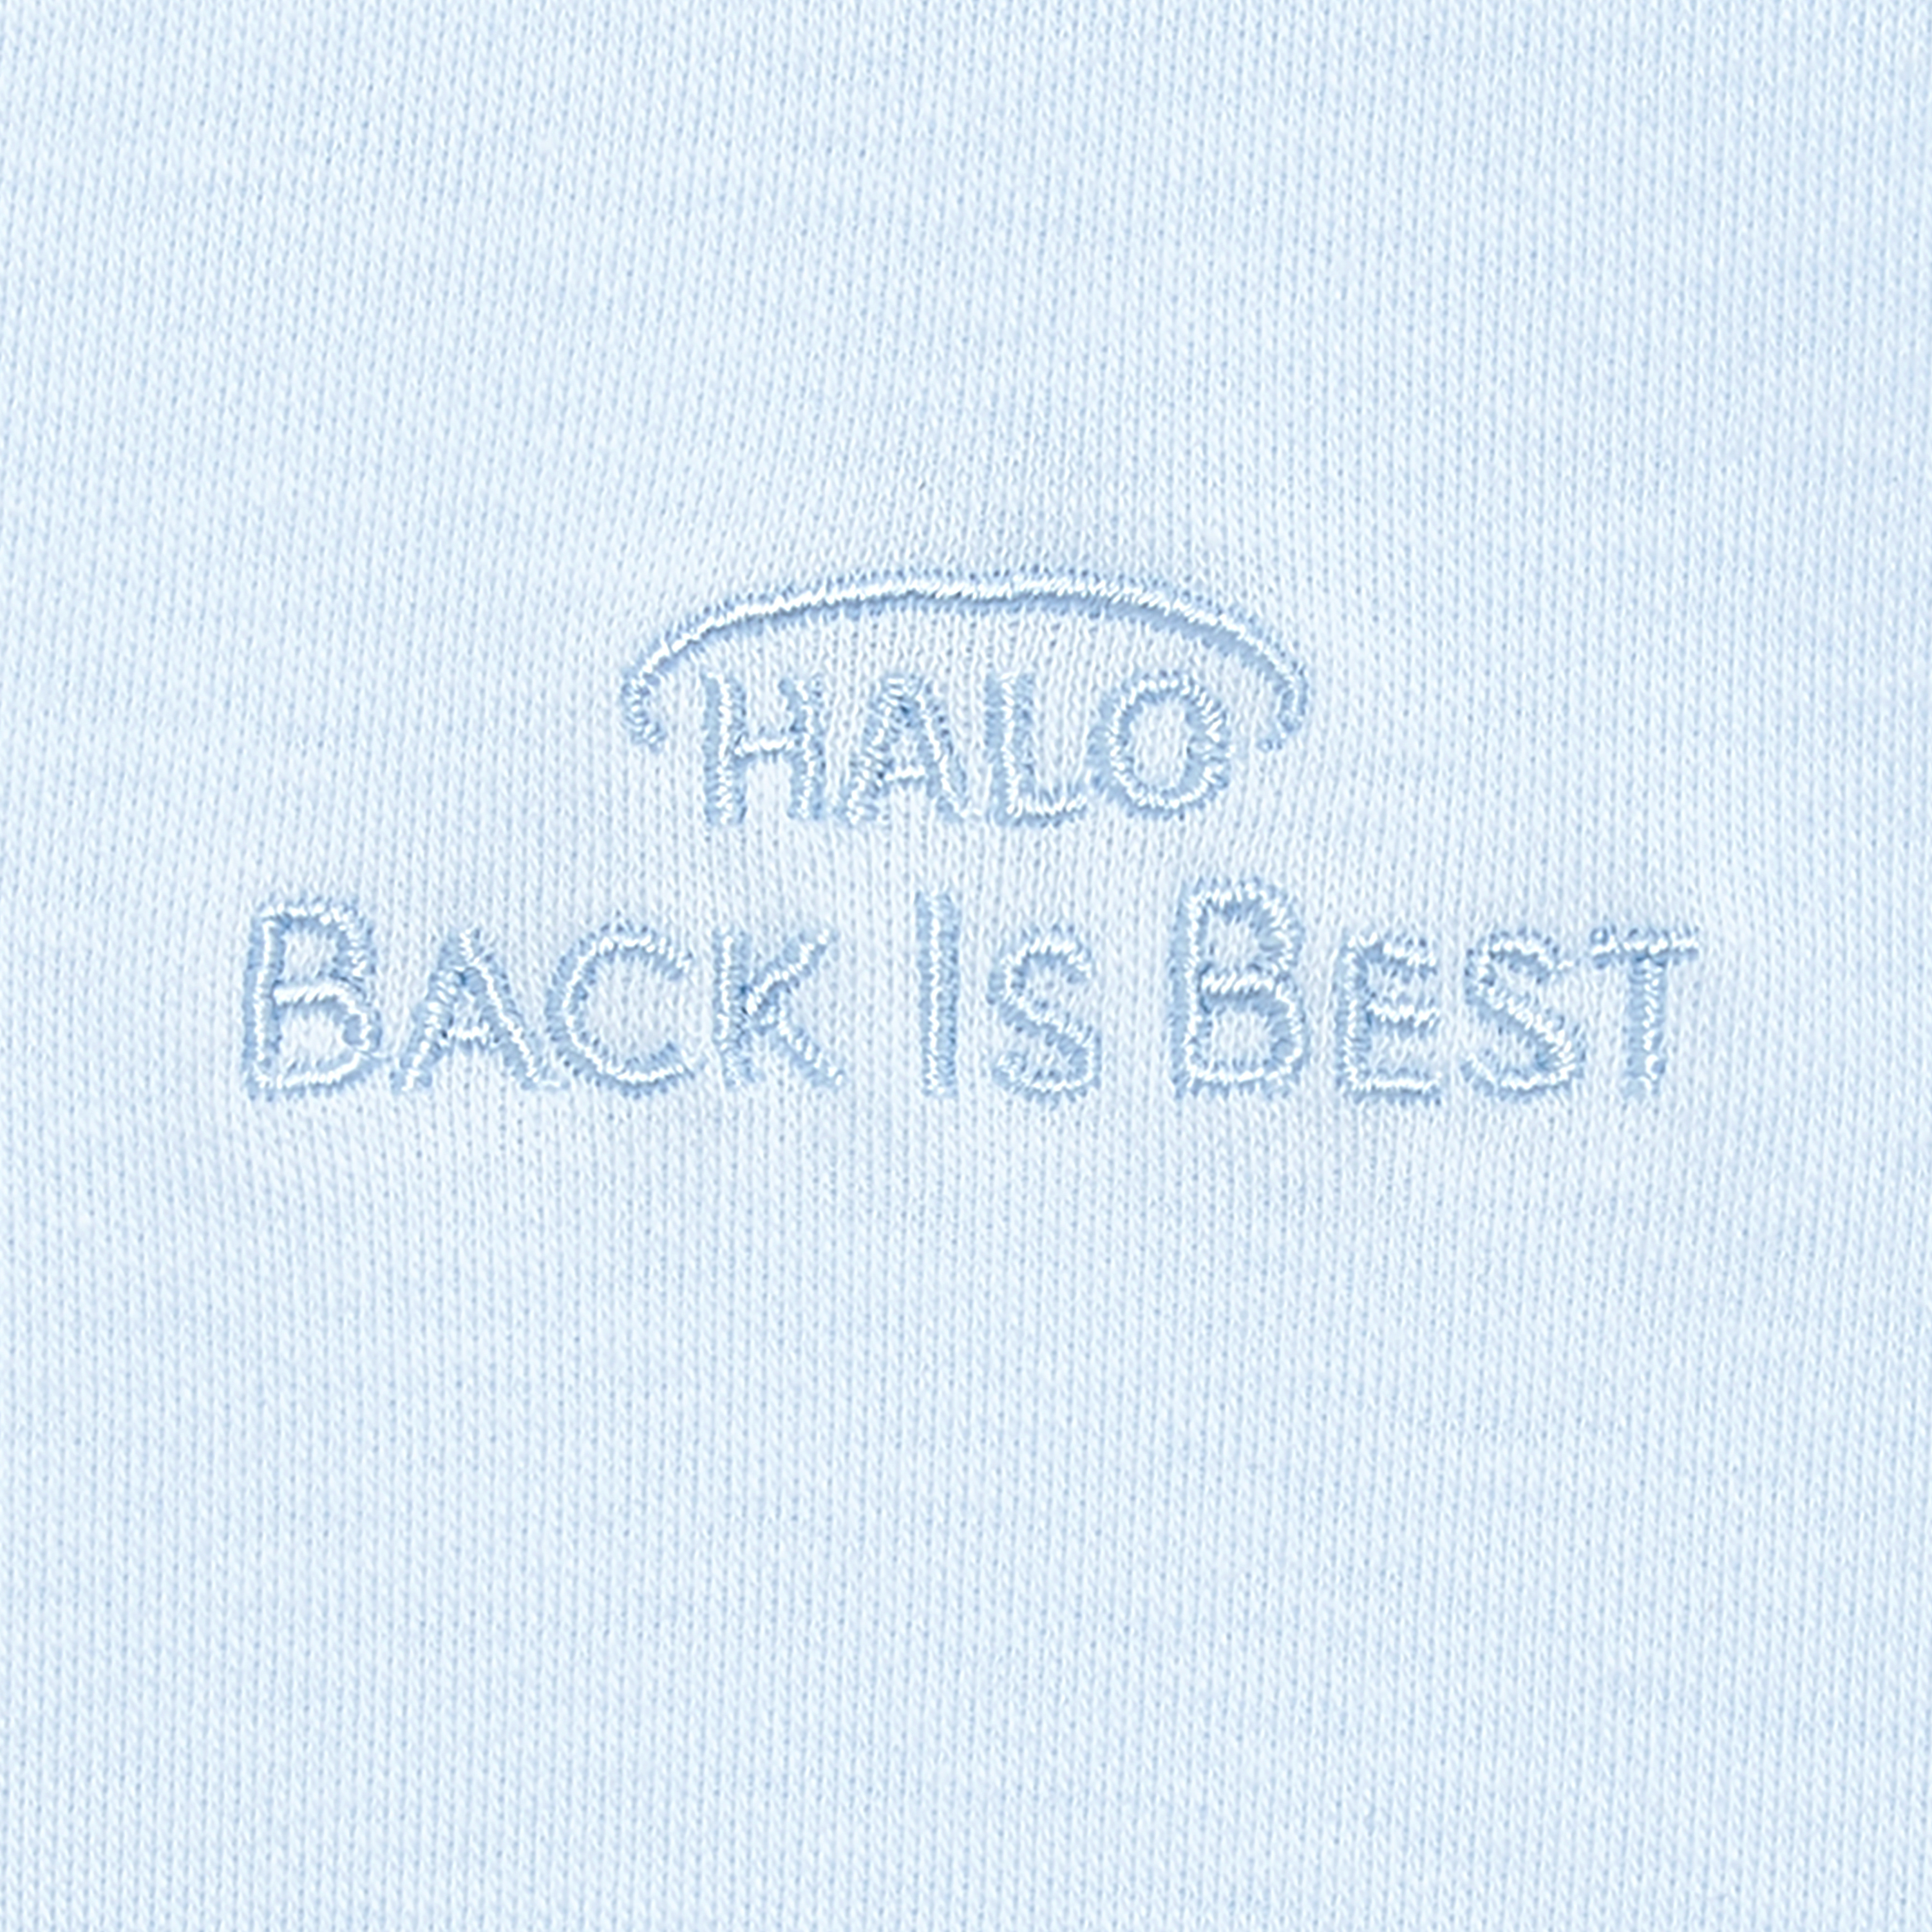 Halo® Sleepsack® Swaddle, 100% Cotton, Bably Blue, Newborn Boys, 0-3 Months - image 2 of 3